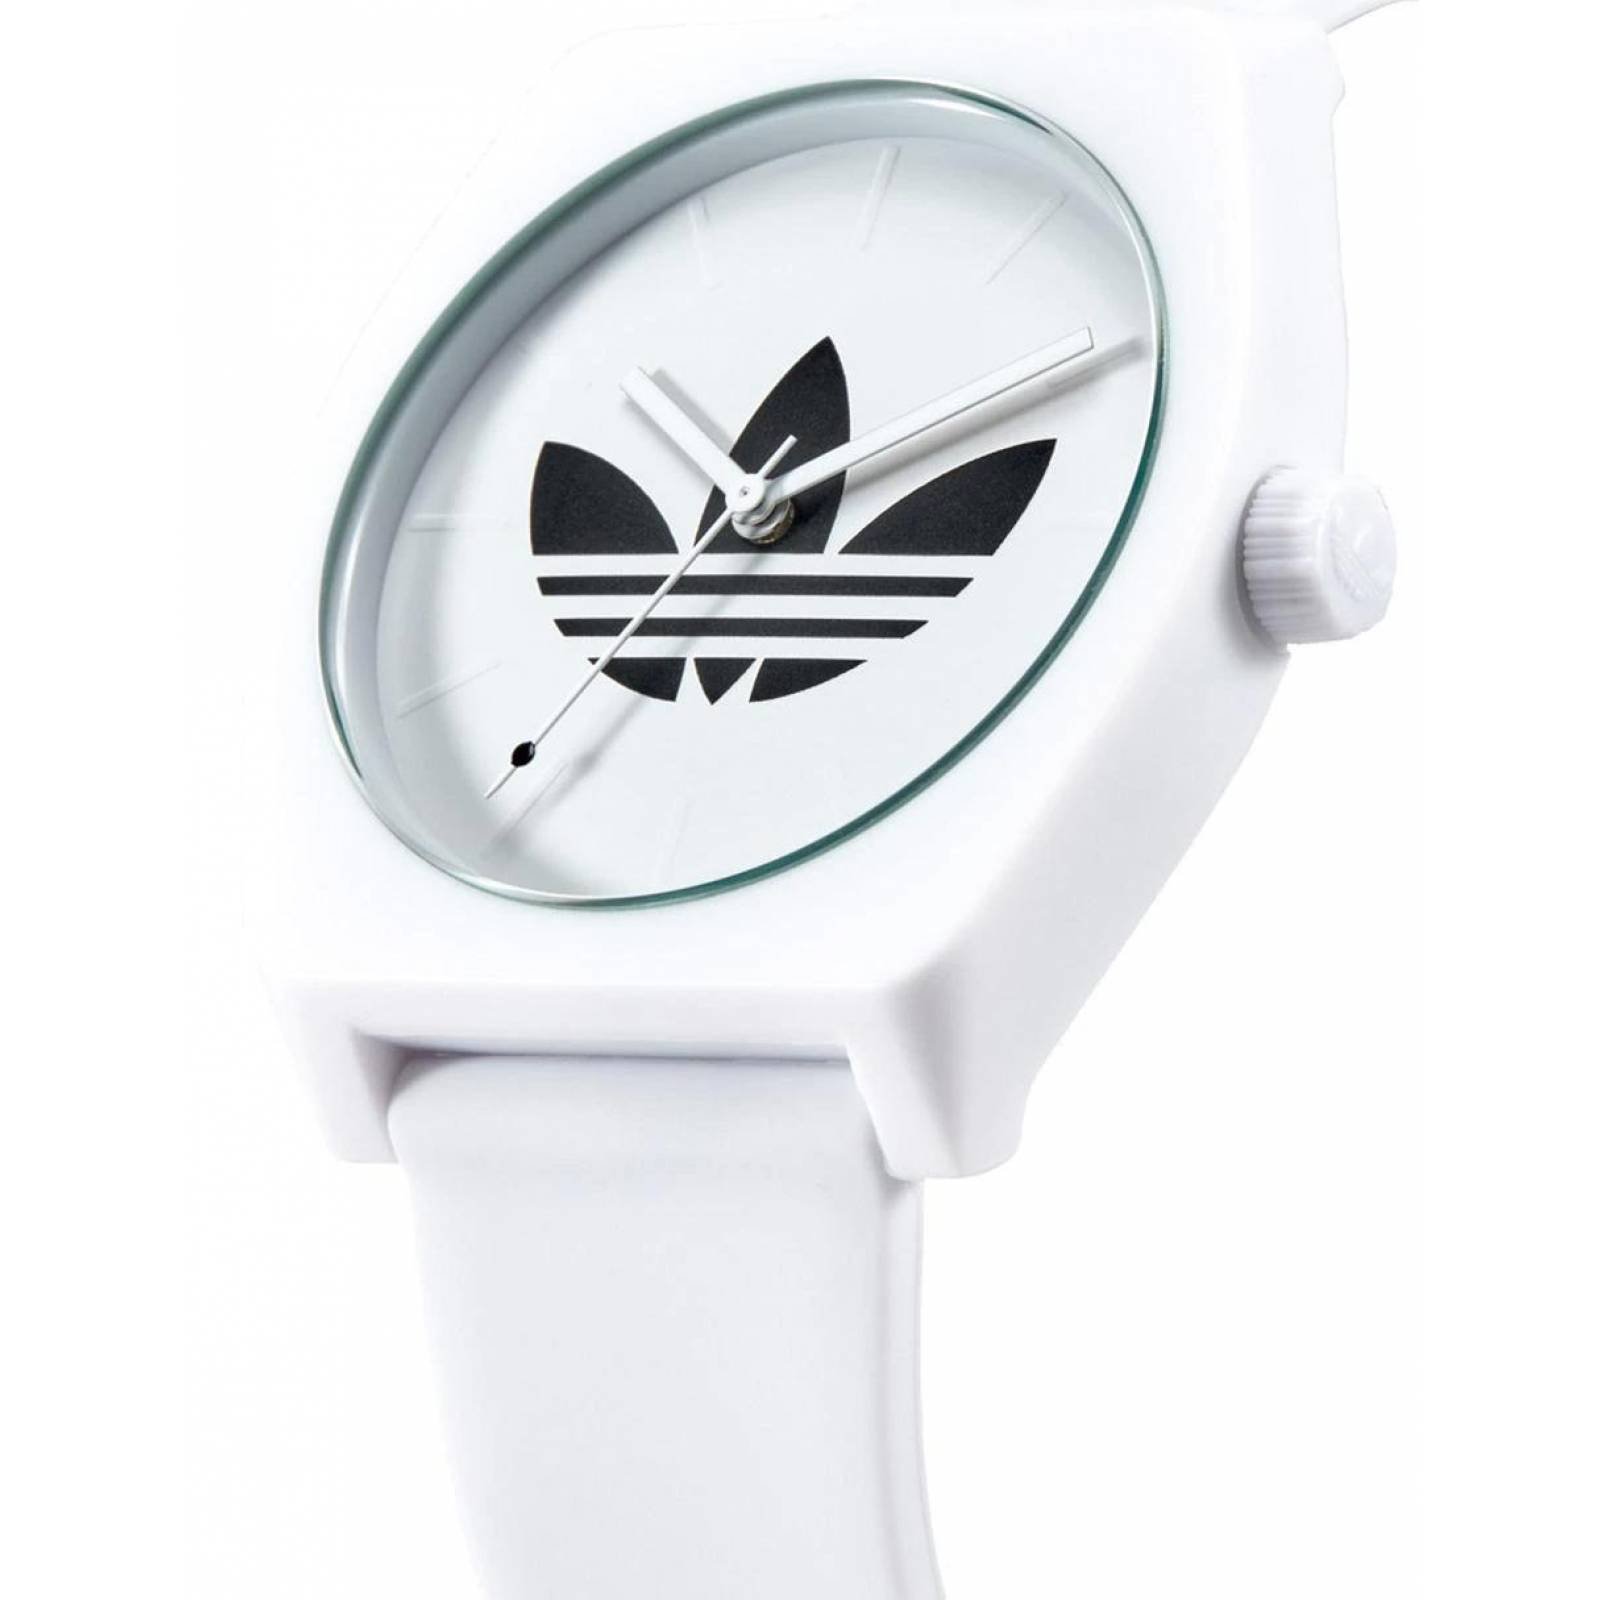 Reloj Adidas Unisex Process Sp1 Blanco Z10-3260 